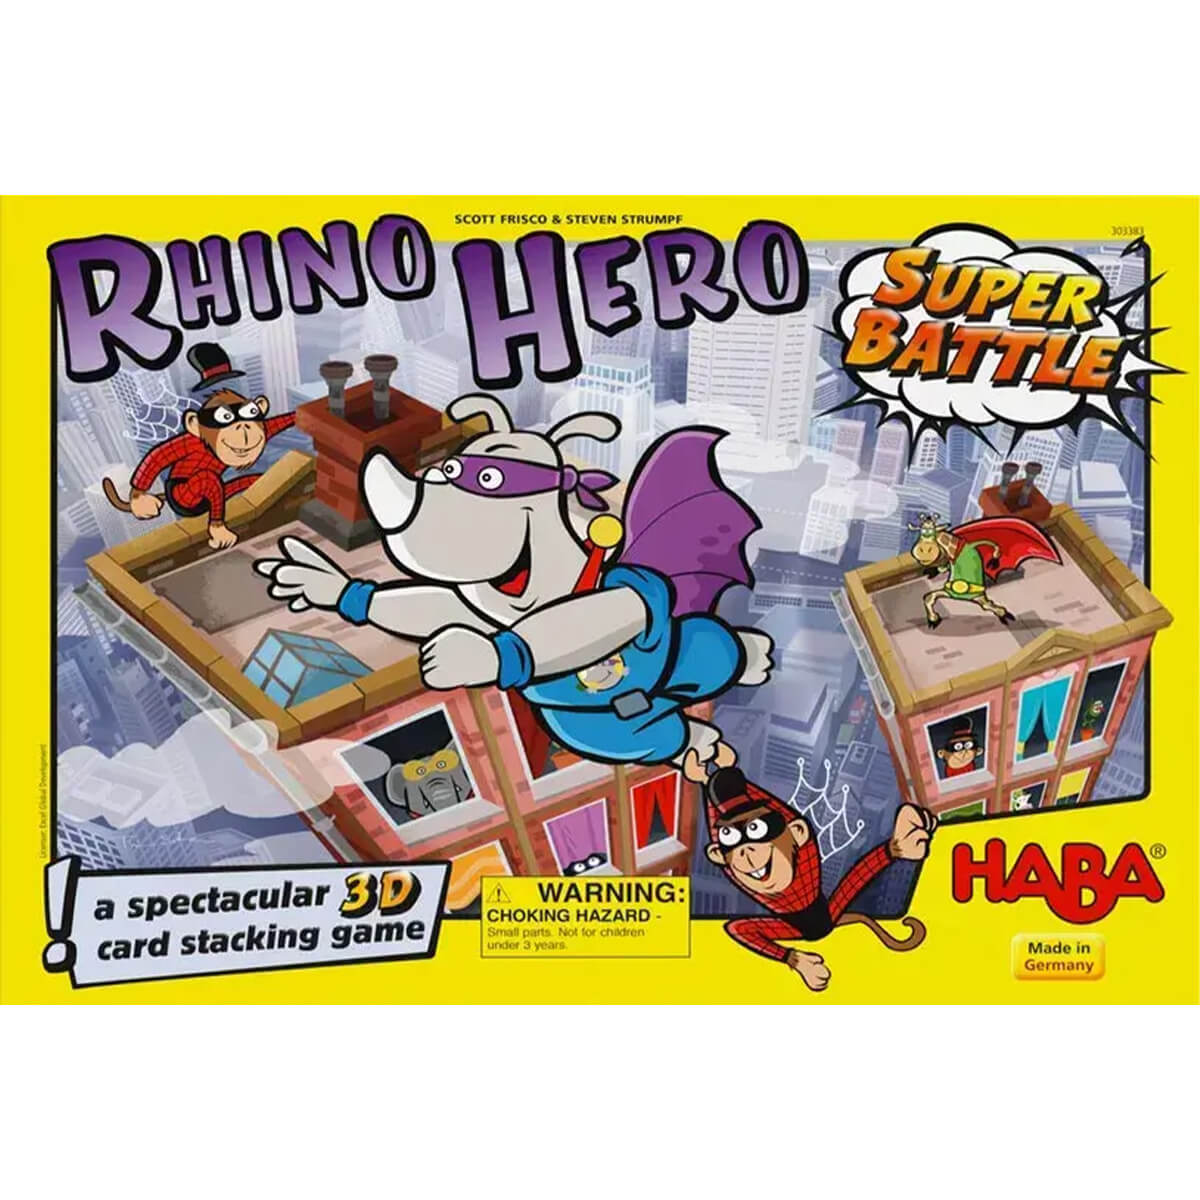 Rhino Hero Super Battle.